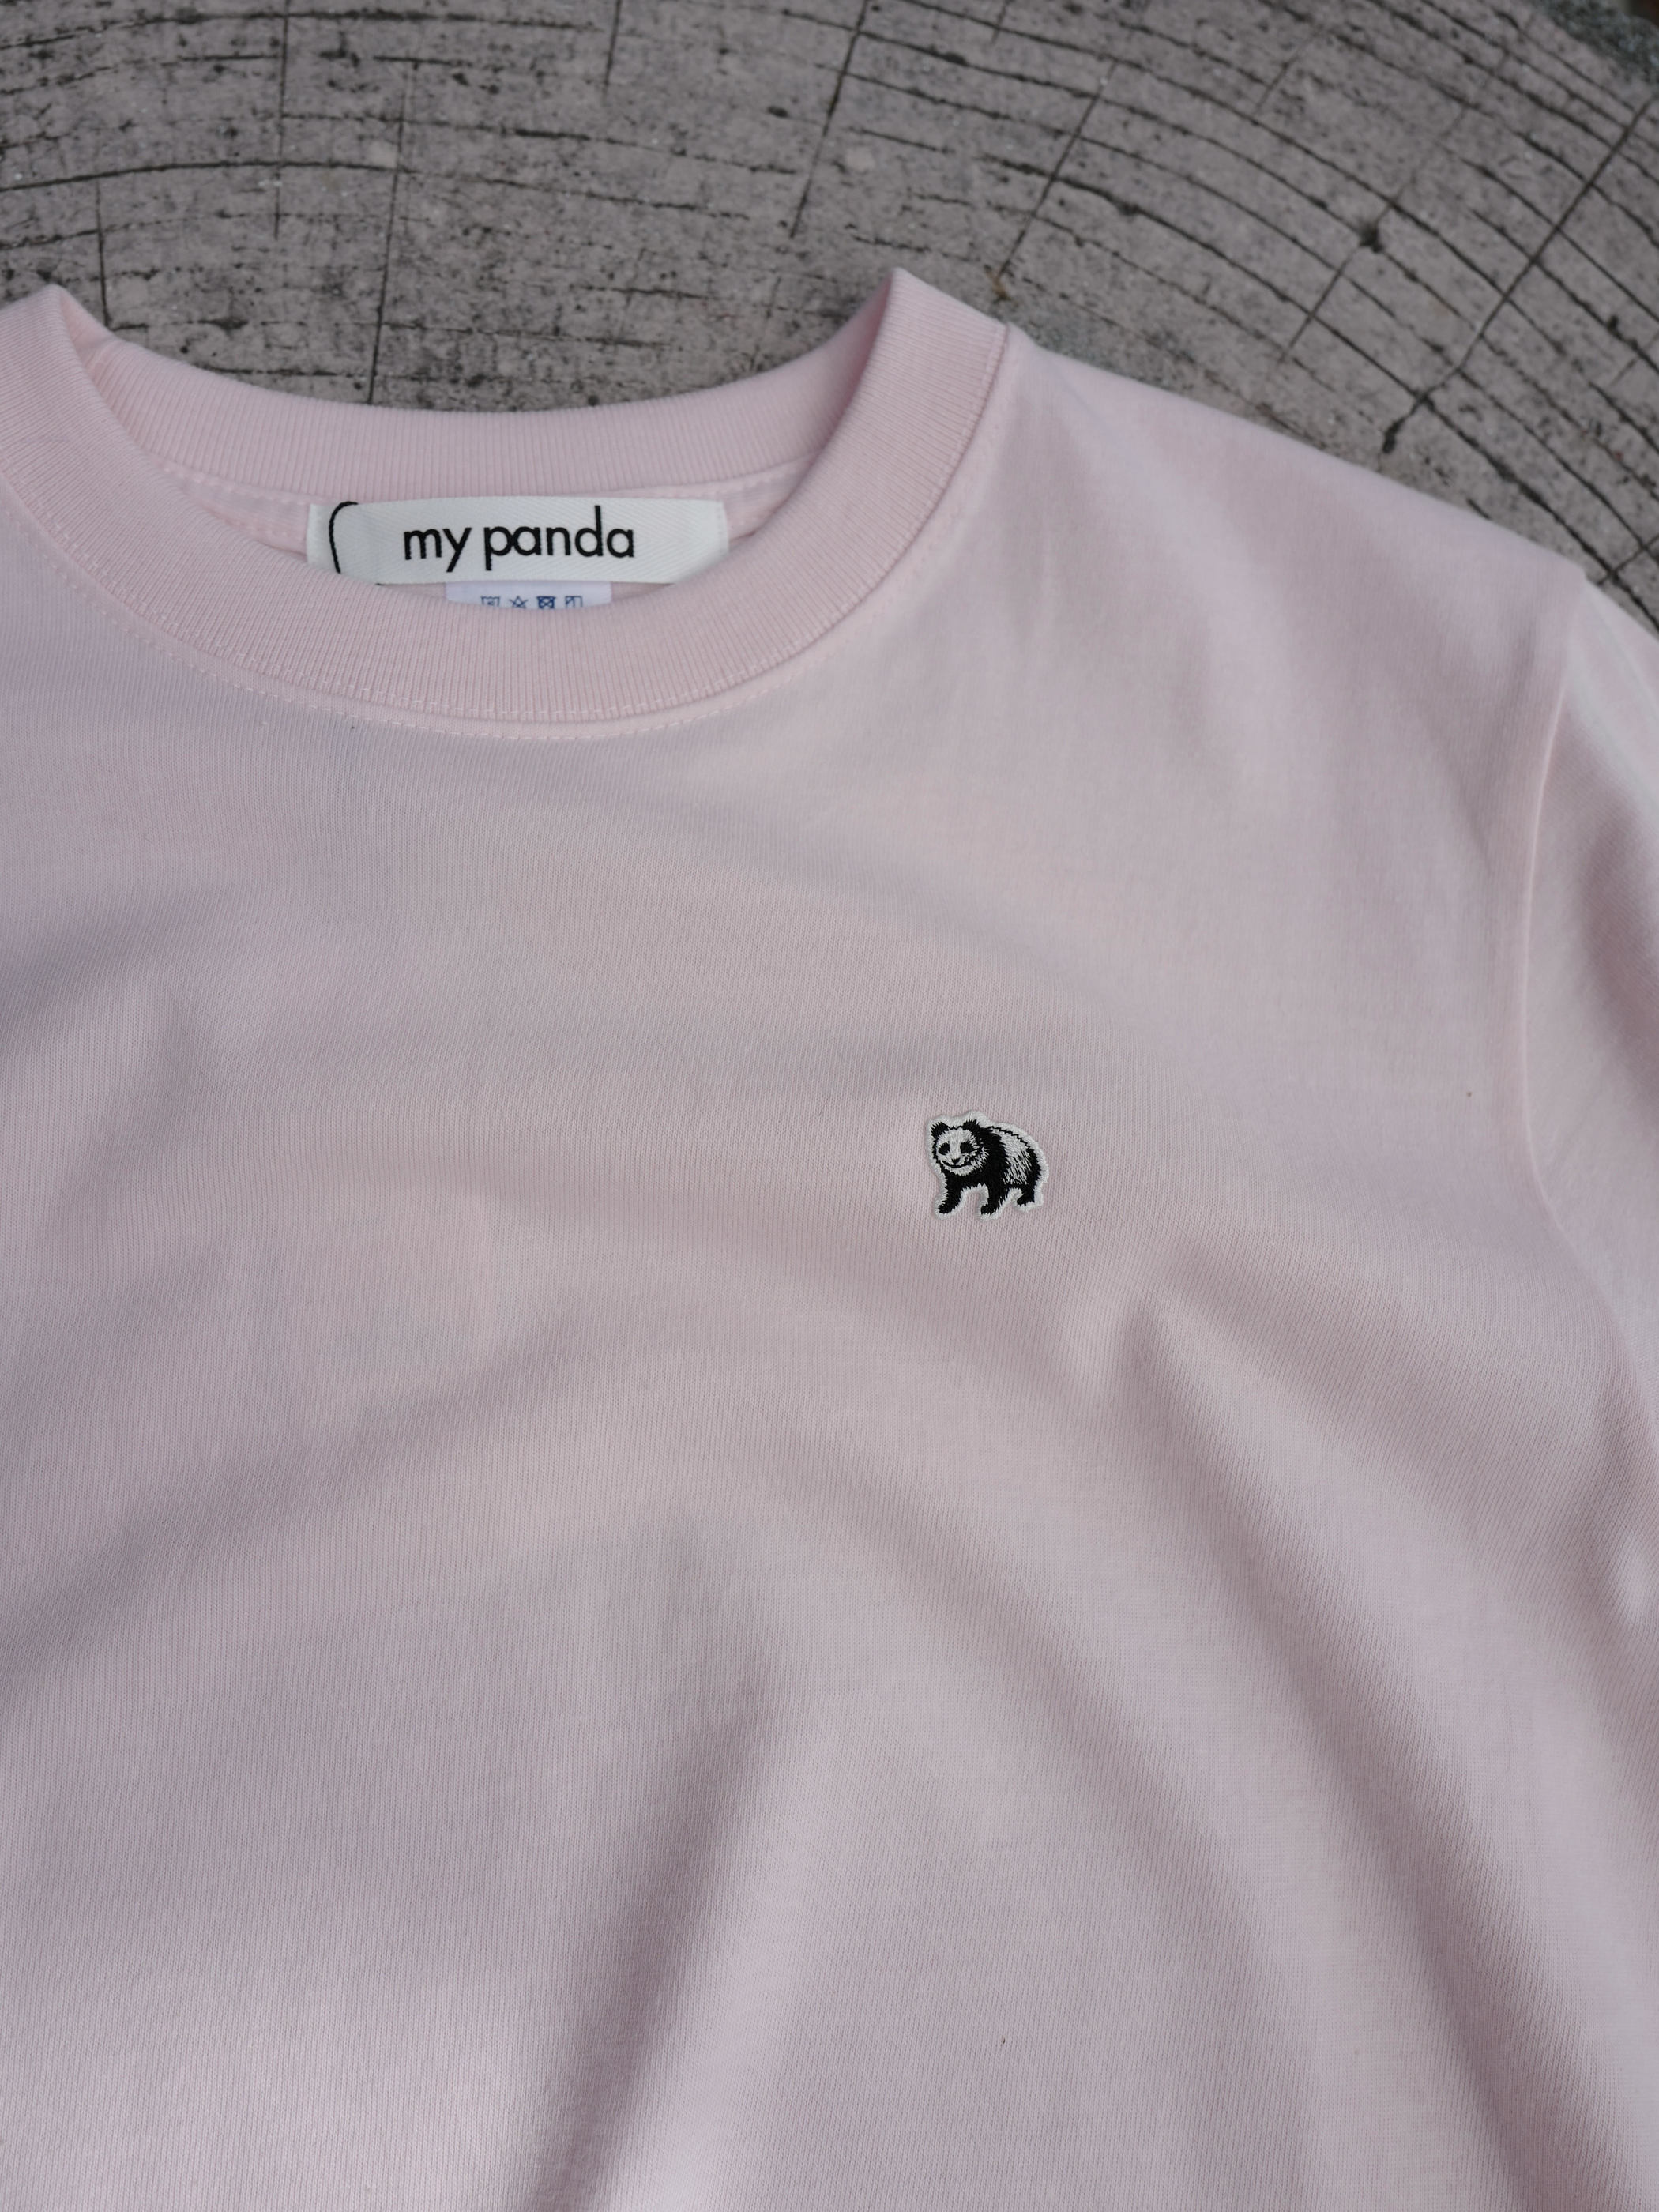 【沖縄スペシャル】twin pandas back print T-shirt・PINK